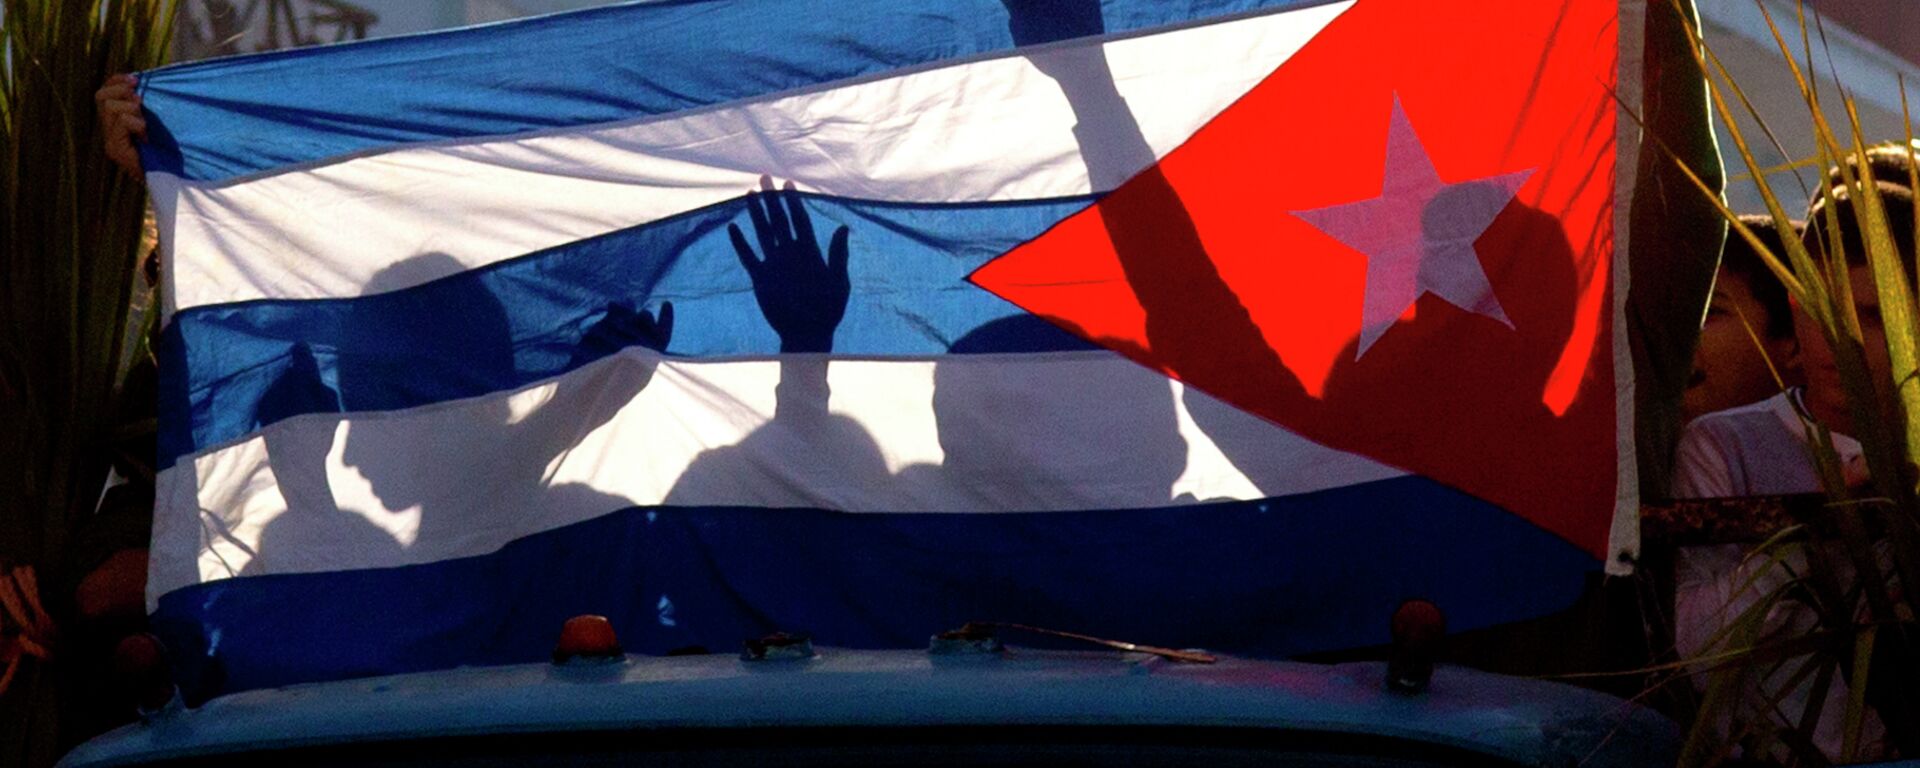 Senke dece na kubanskoj zastavi tokom proslave pobede Kastra i njegove vojske u Regli na Kubi - Sputnik Srbija, 1920, 15.05.2022